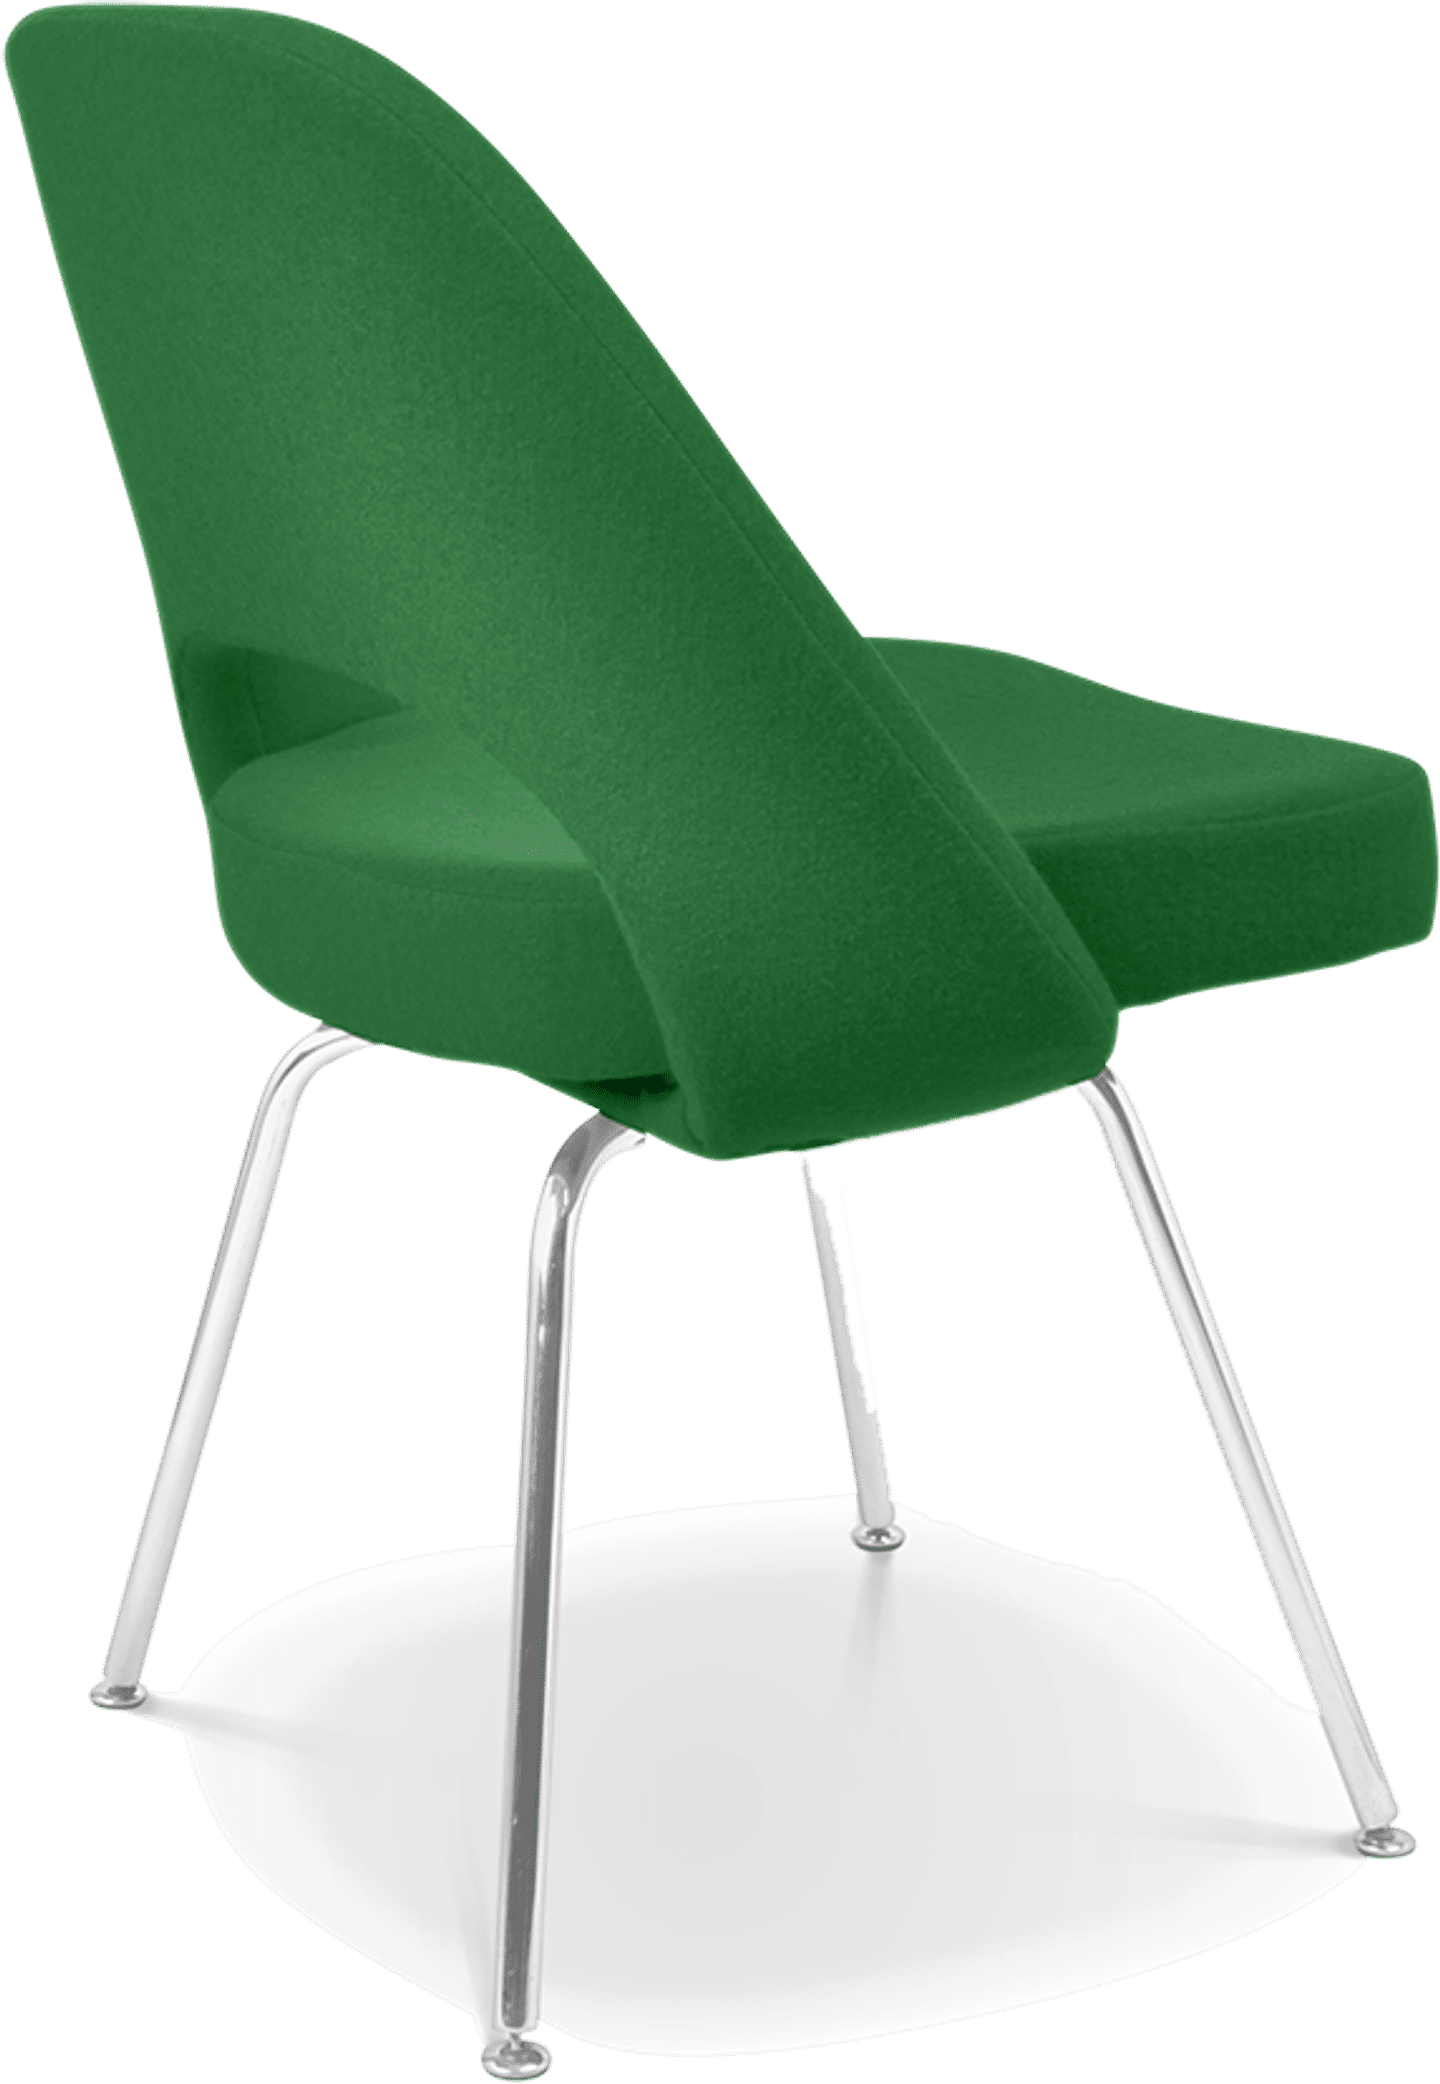 Chaise de direction Saarinen Green image.